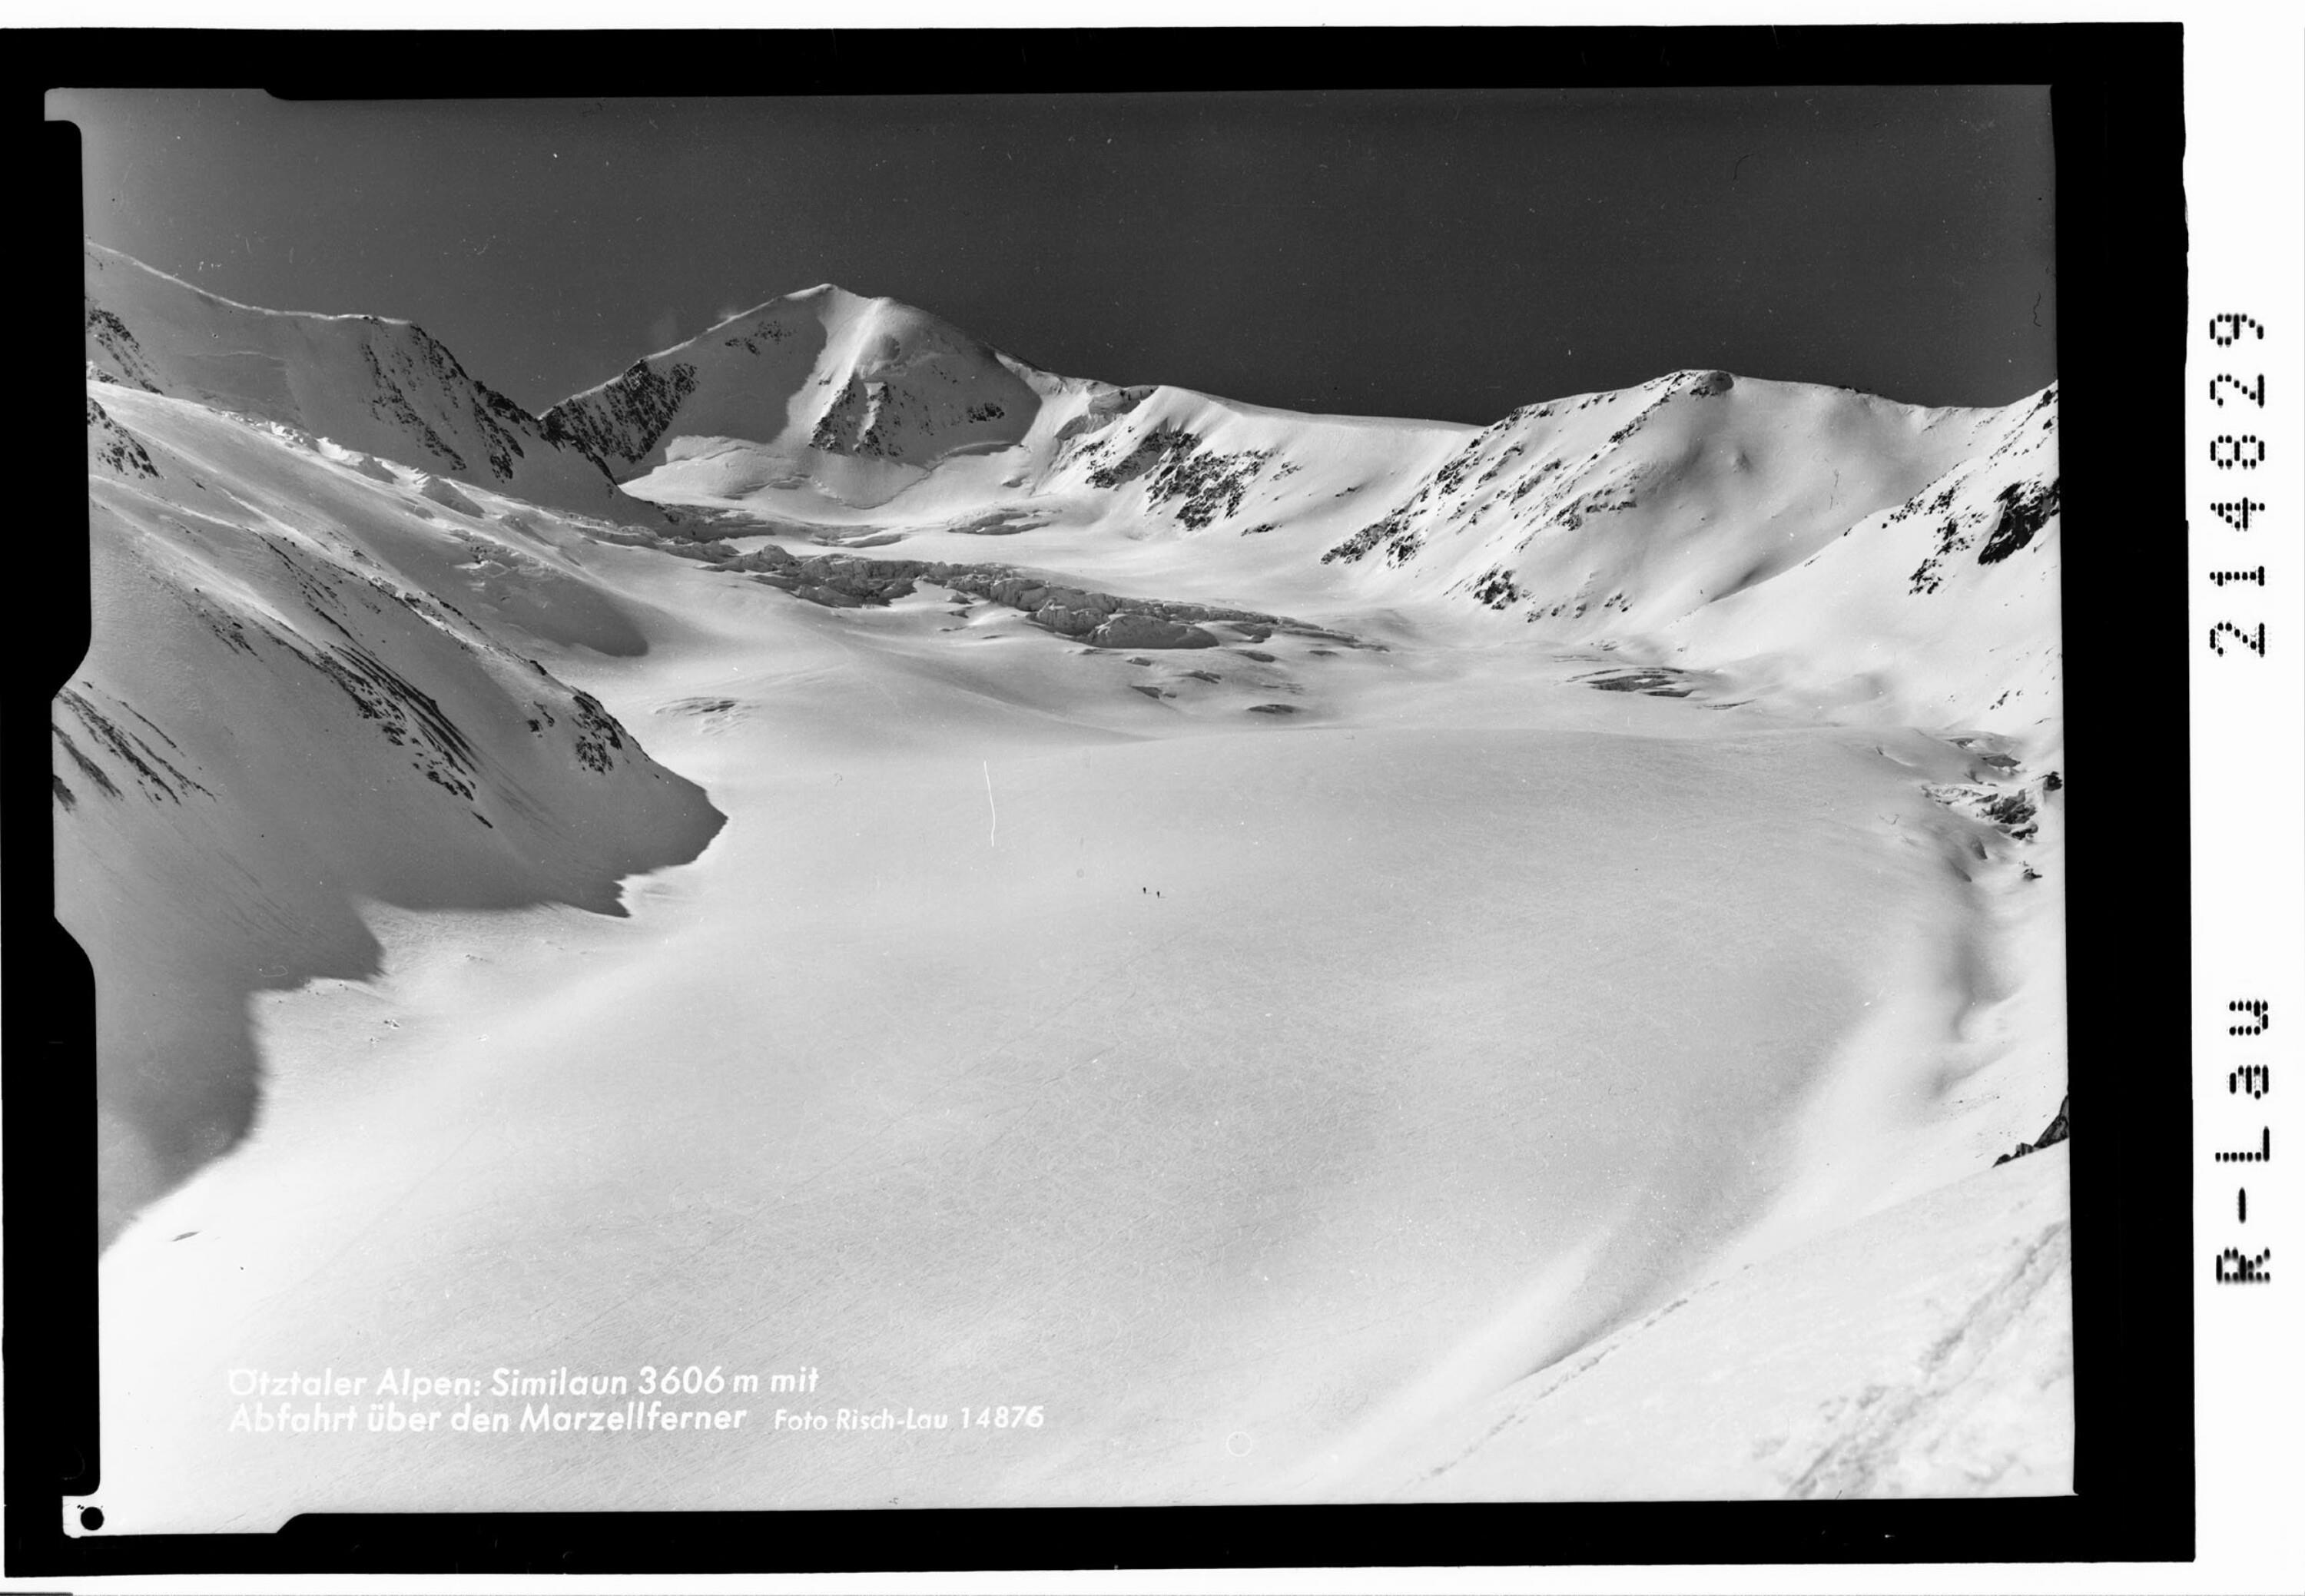 Ötztaler Alpen : Similaun 3606 mit Abfahrt über den Marzellferner></div>


    <hr>
    <div class=